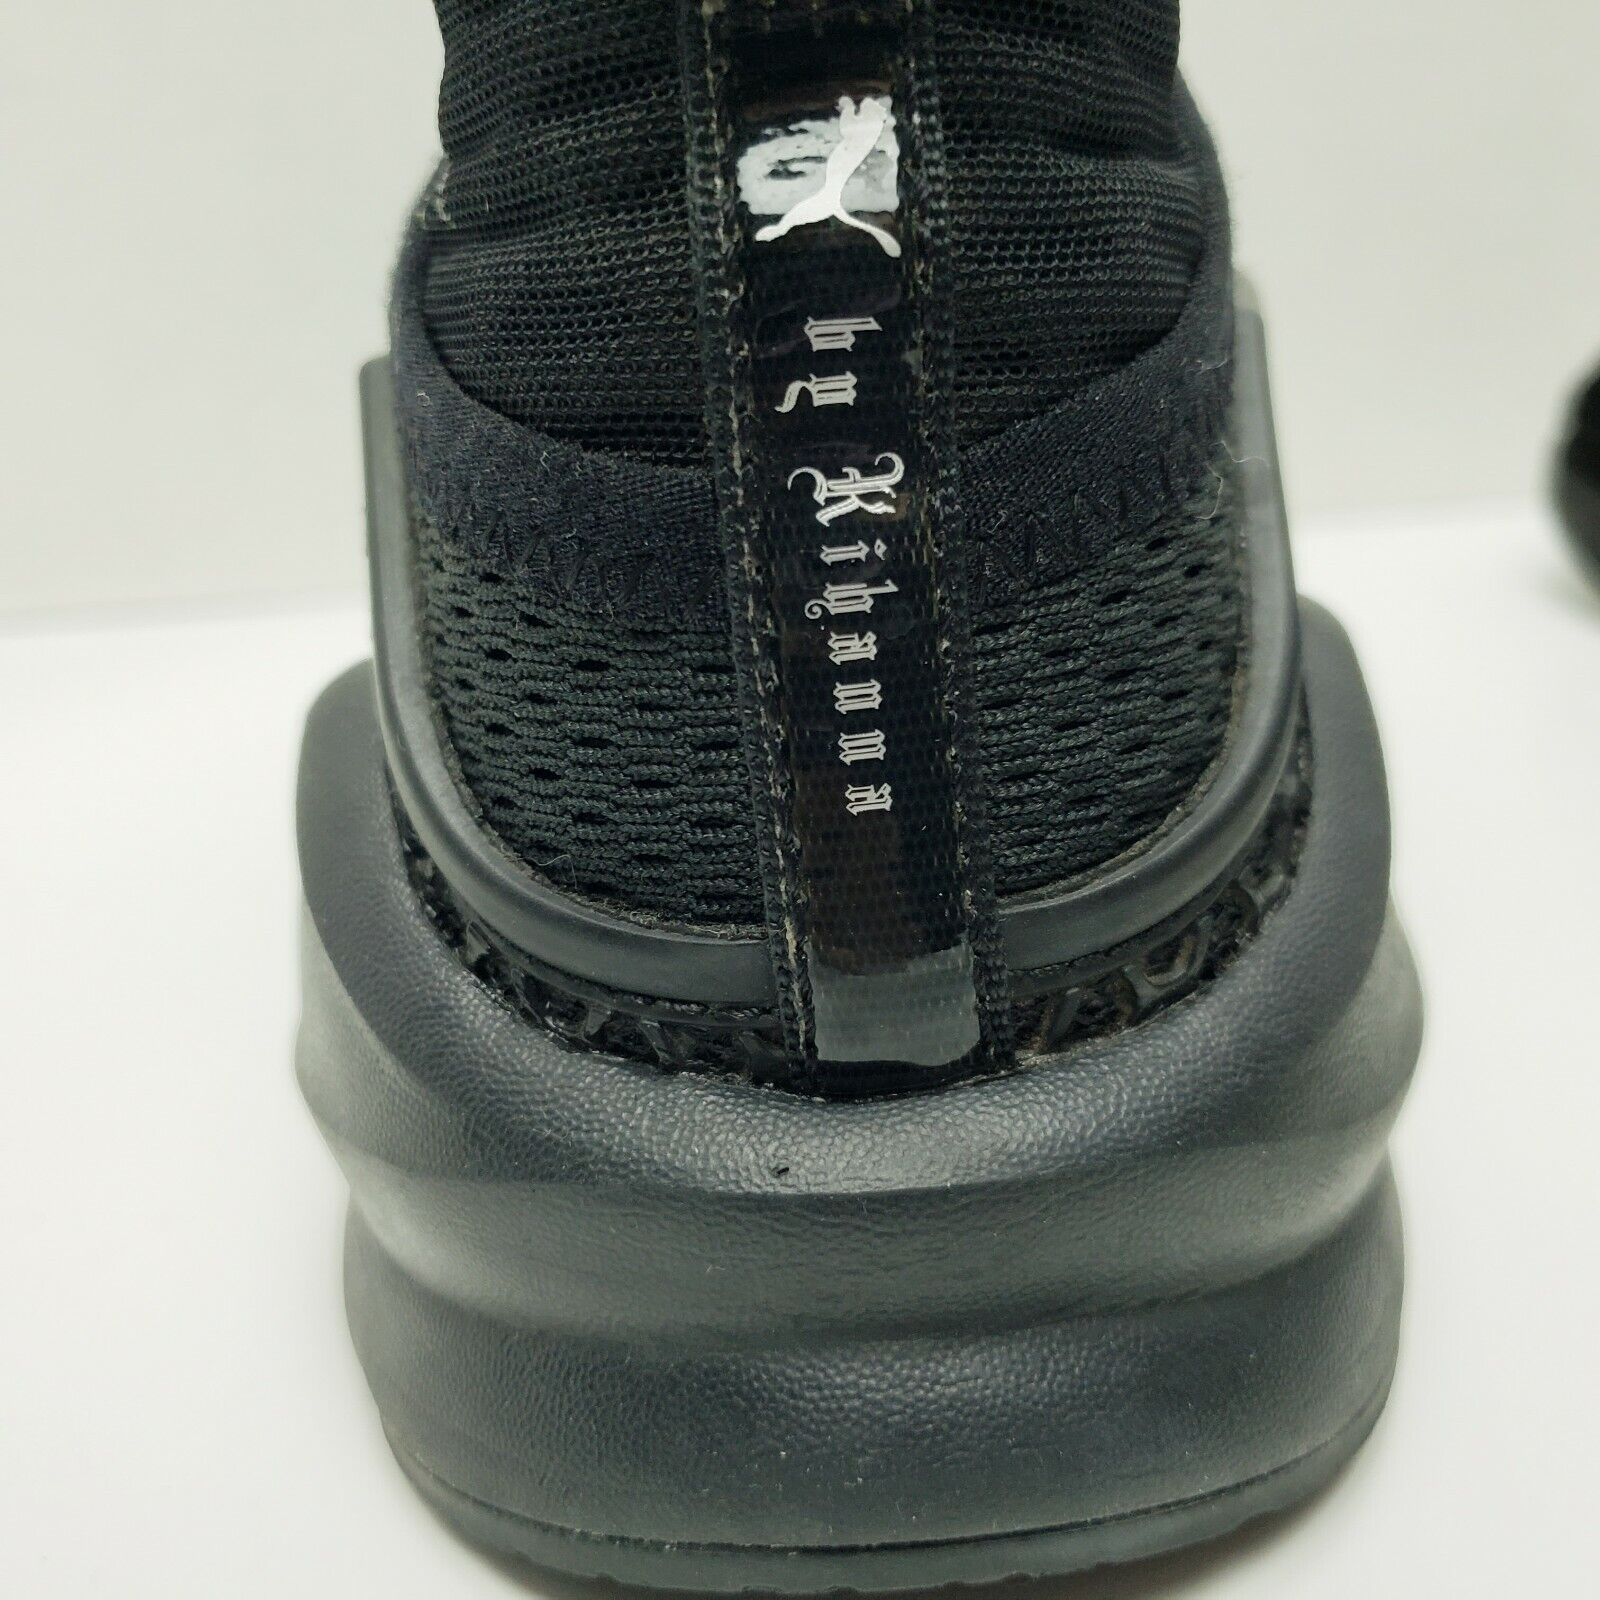 PUMA Fenty by Rihanna Women's X Trainer Mono Black Sneaker 18969501 Size 6